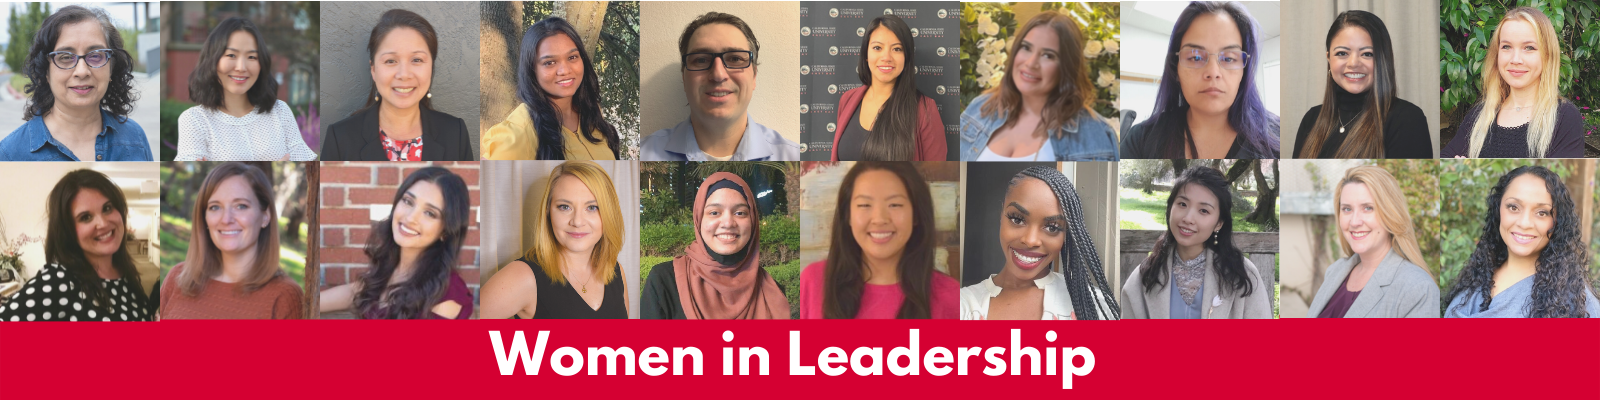 Women in Leadership Speaker Series Banner